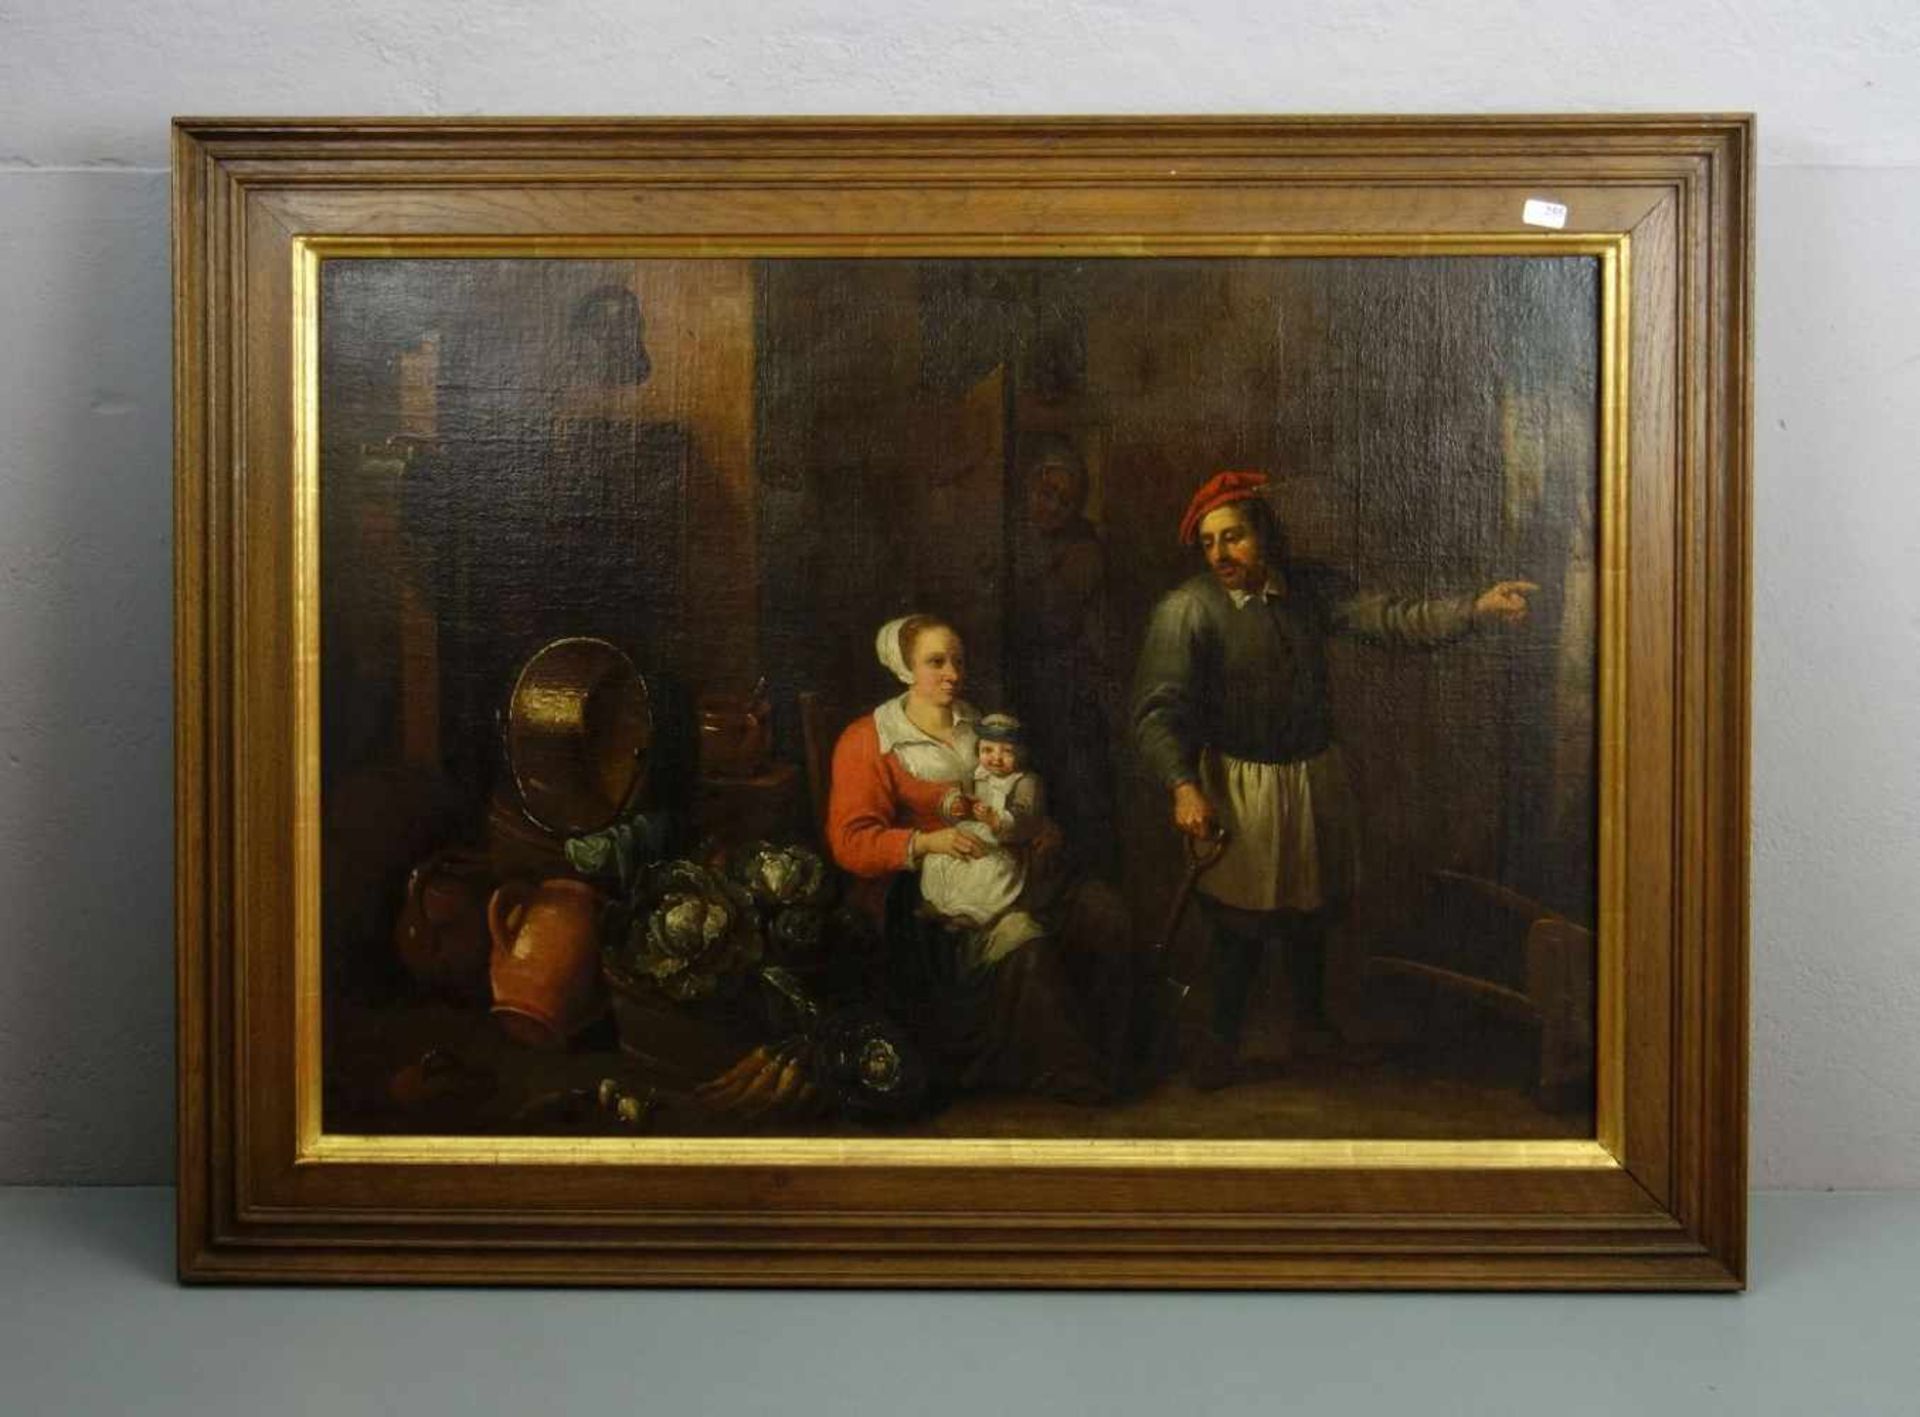 KOPIST DES 19. JAHRHUNDERTS, Gemälde / painting: nach "Bauer mit Frau und Kind vor dem Bauernhaus"